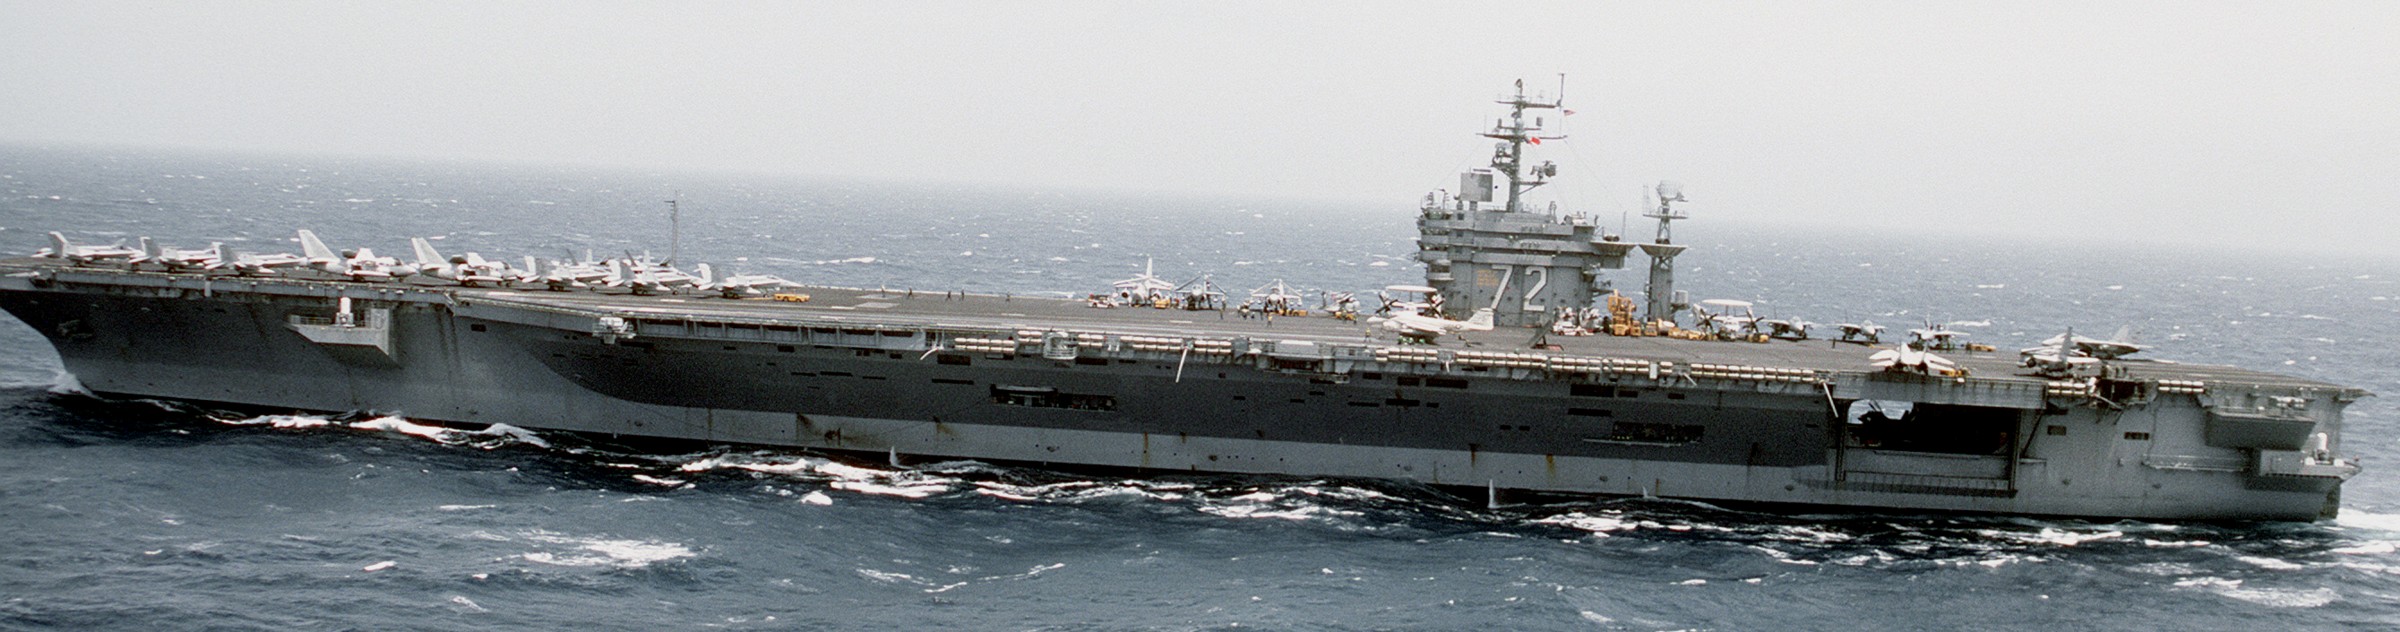 cvn-72 uss abraham lincoln nimitz class aircraft carrier air wing cvw-11 us navy 169